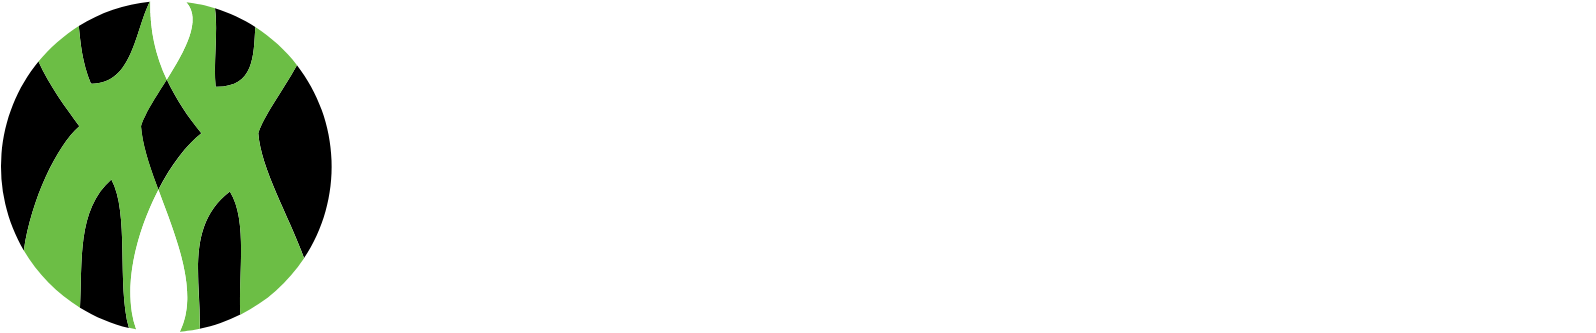 Personalis logo grand pour les fonds sombres (PNG transparent)